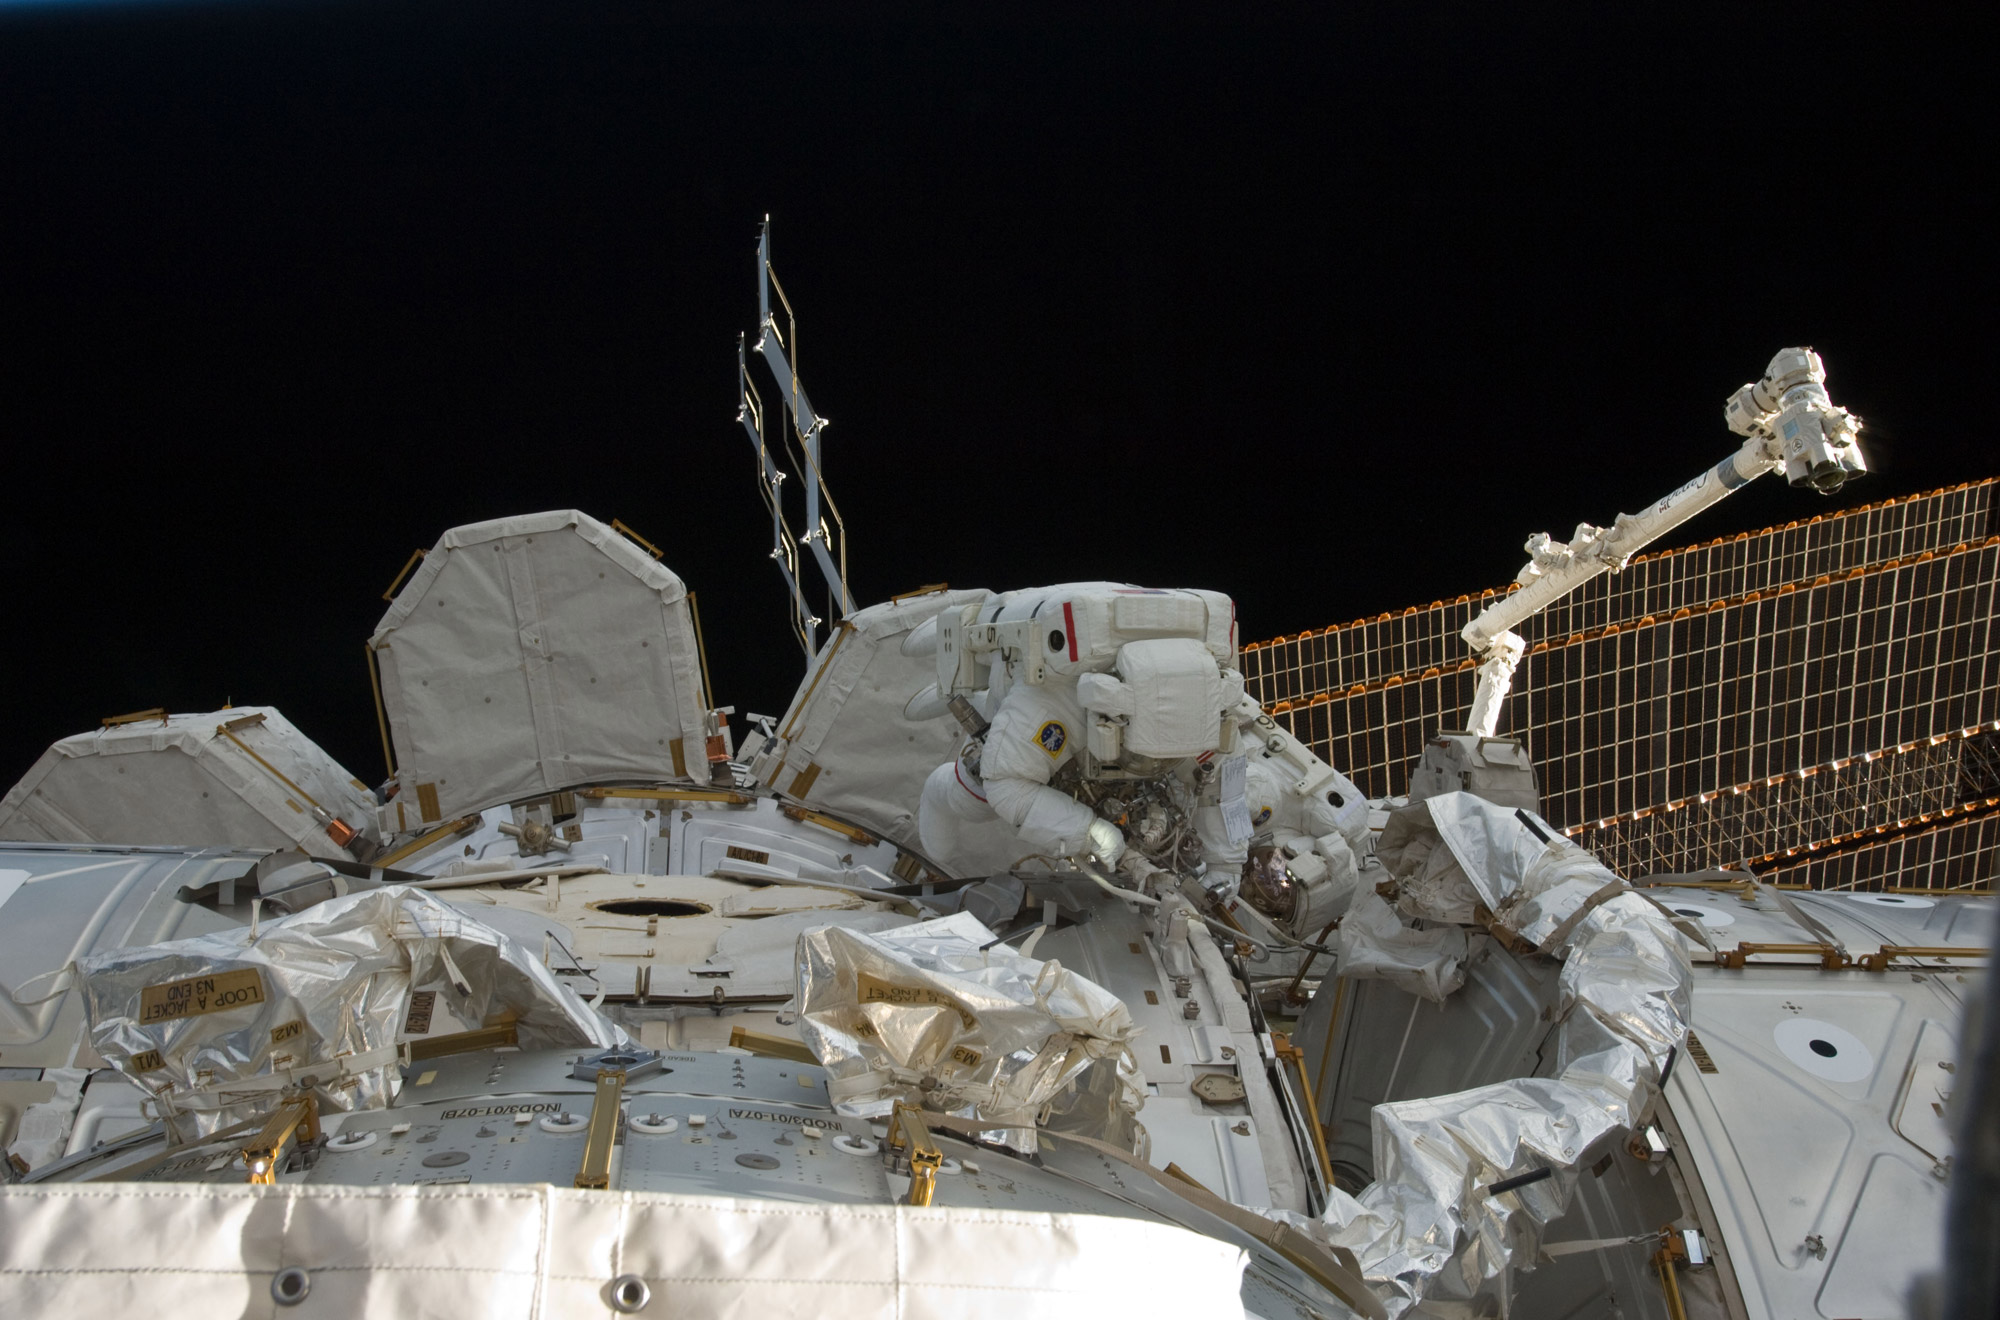 La première des deux sorties extravéhiculaires de la mission de Discovery (STS-133) s'est bien déroulée malgré un problème technique sans conséquence pour les deux astronautes, les Américains Bowen et Drew. Amusez-vous à les identifier tous les deux sur cette photo ! © Nasa